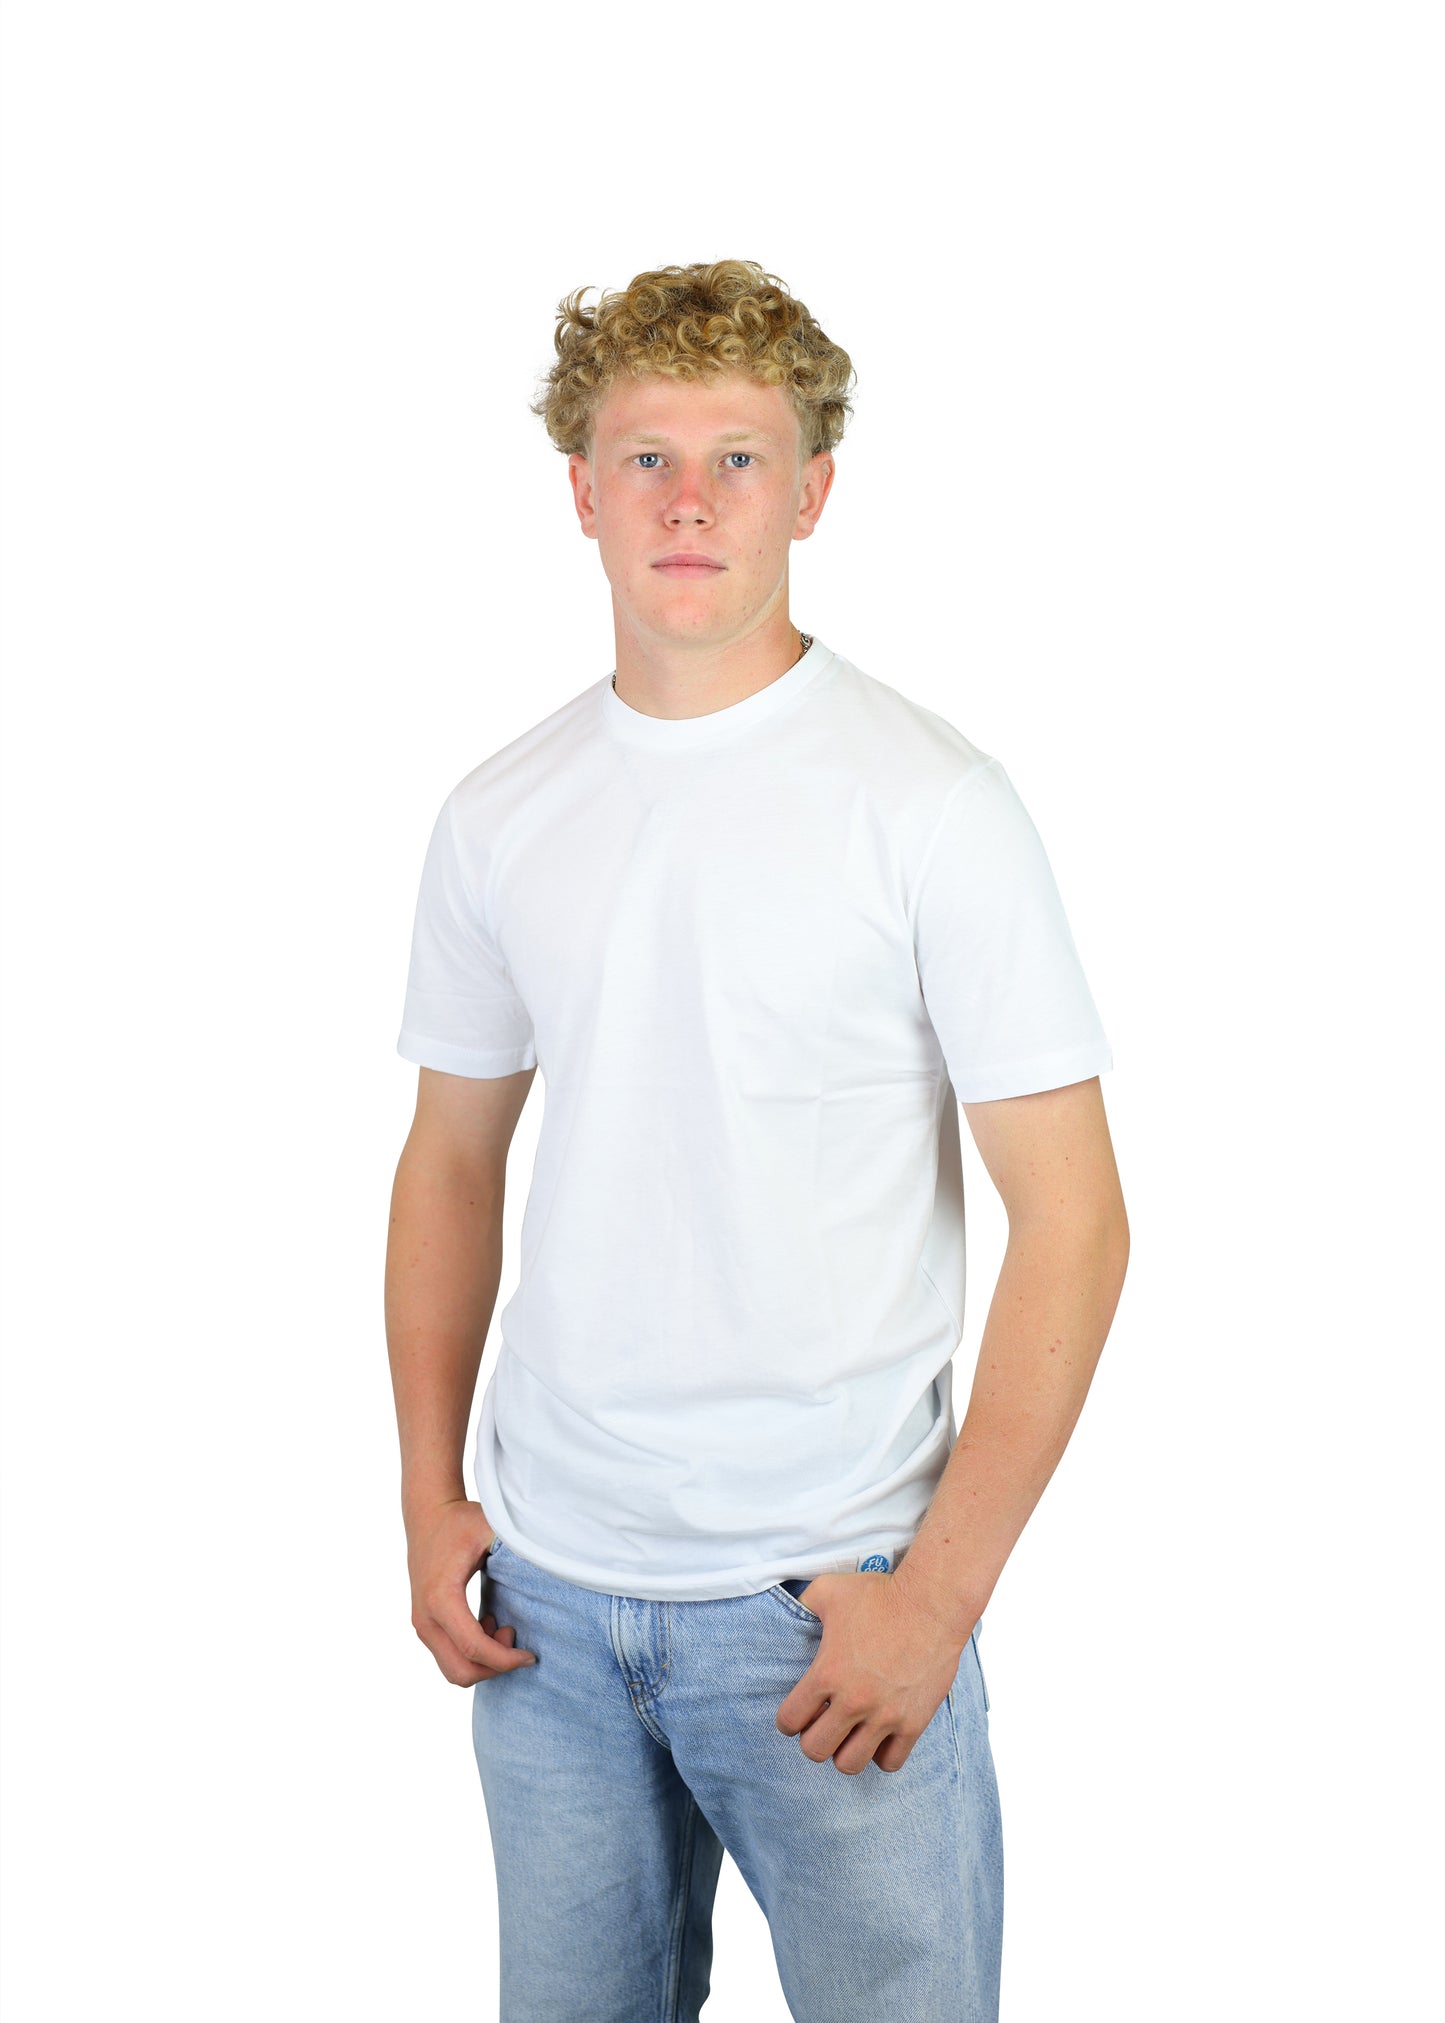 FuPer T-Shirt "Basic Original" Baumwolle unisex (Kinder, Frauen und Herren)